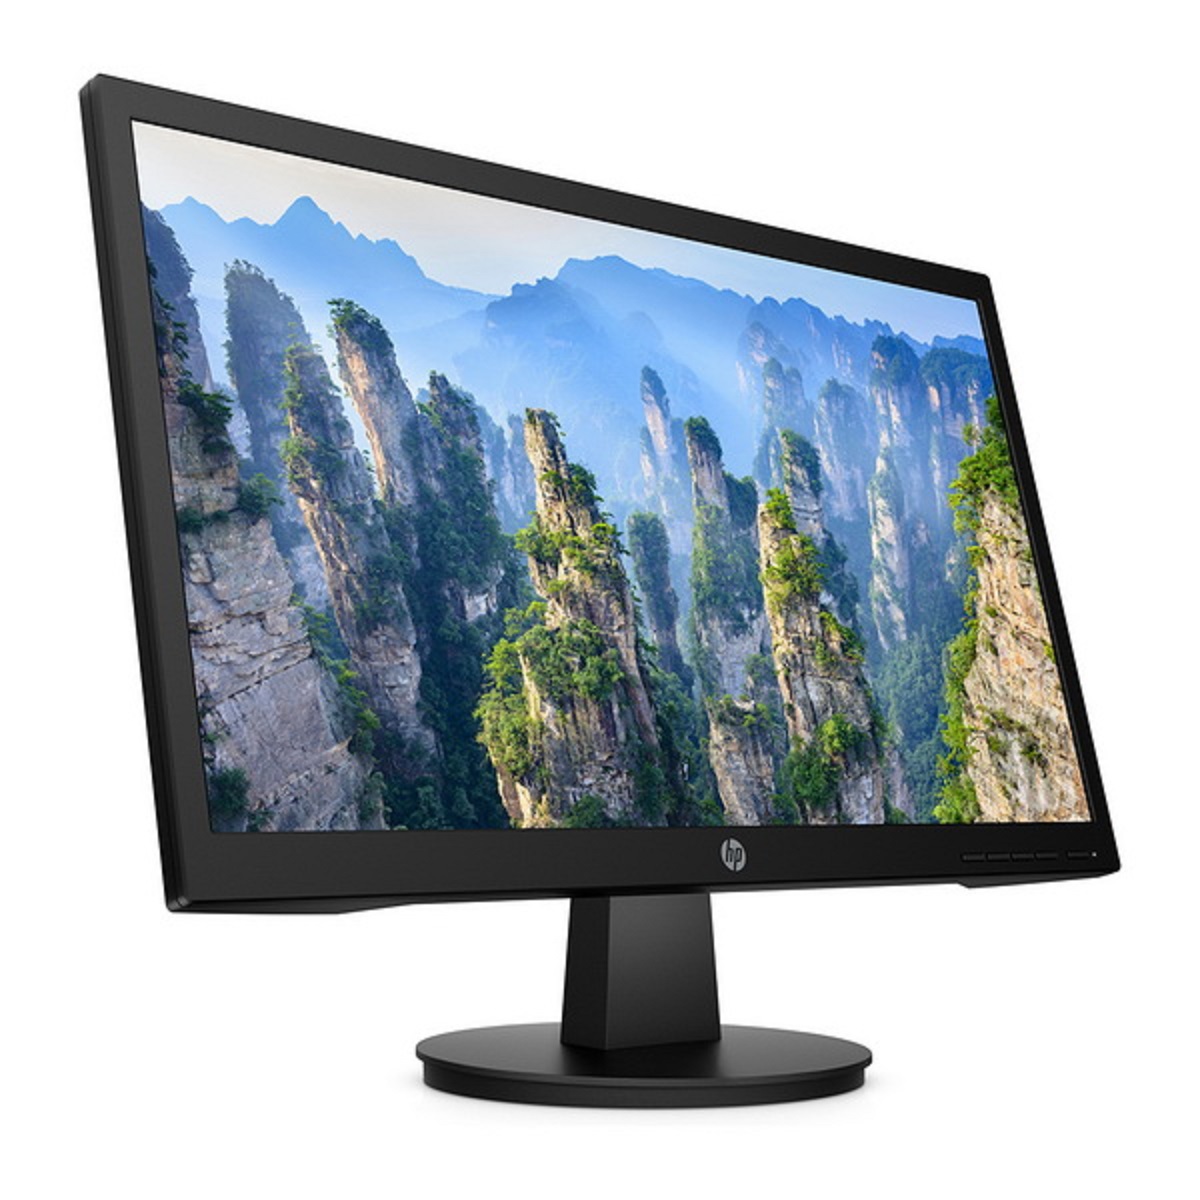 ข้อมูลประกอบของ จอคอมพิวเตอร์ HP Monitor V20 HD+ ขนาด 19.5 นิ้ว (1600 x 900) สินค้าใหม่มีรับประกัน 3 ปี ออกใบกำกับภาษีได้